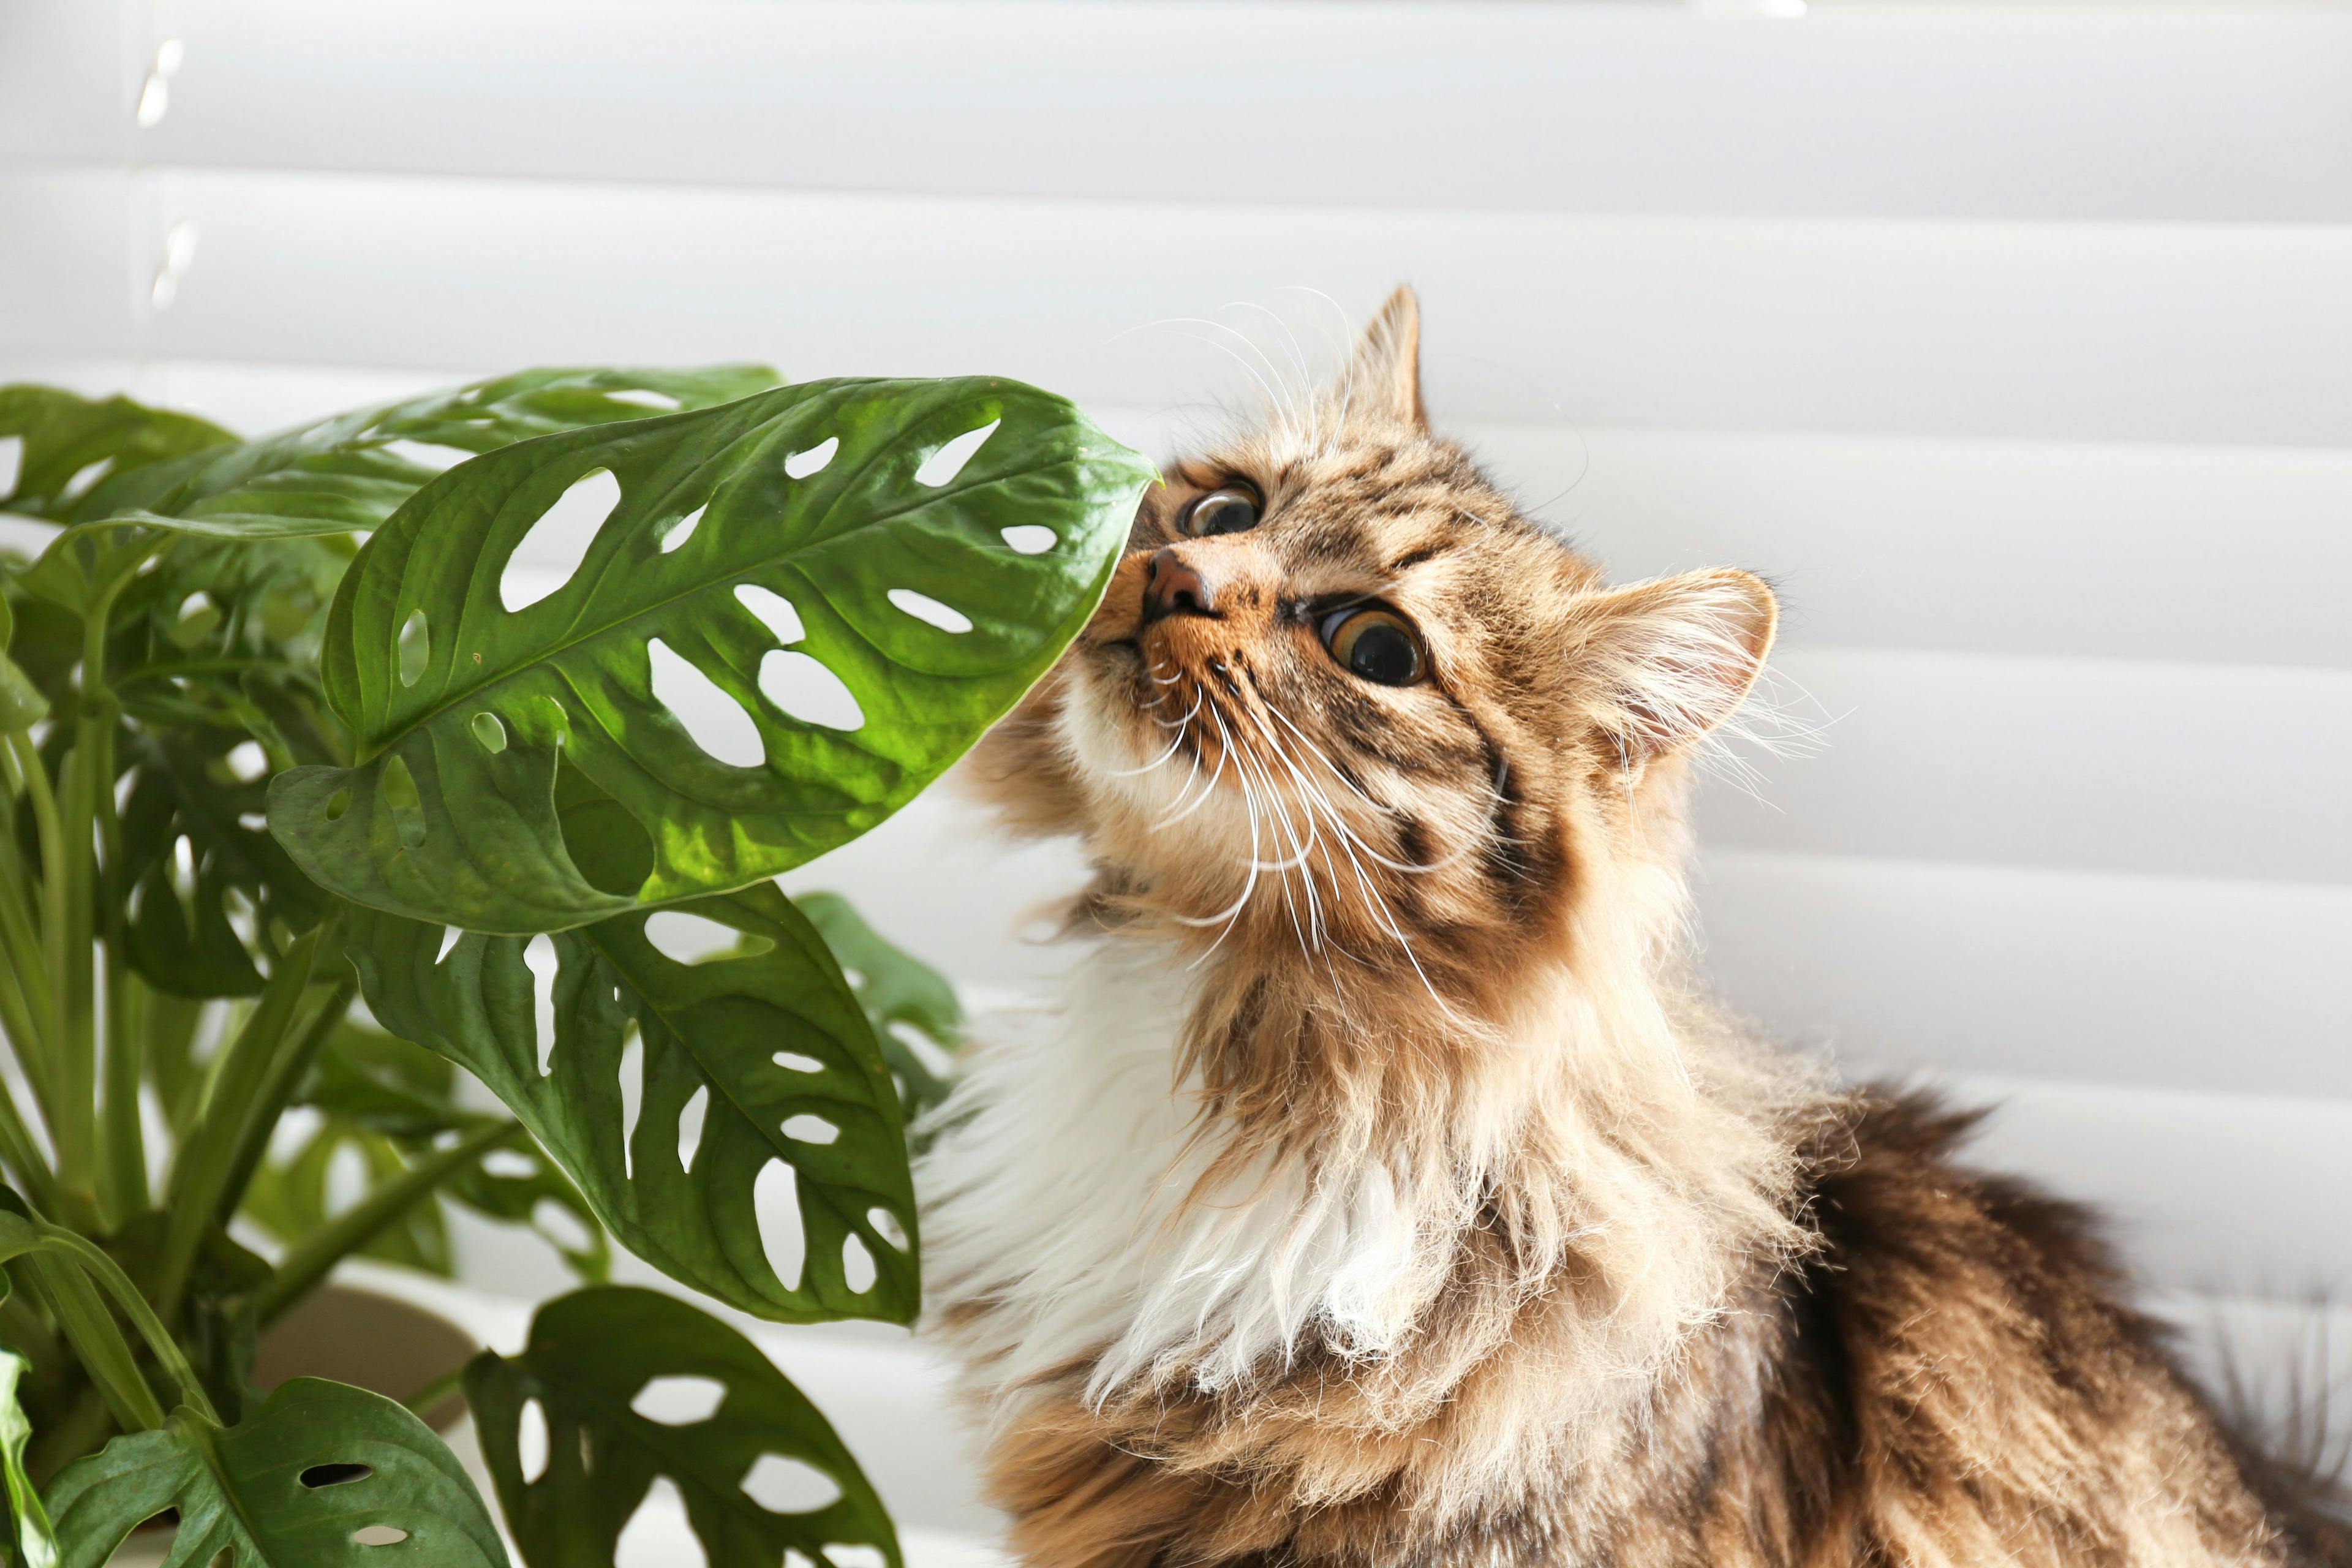 3 quick tips for addressing common feline nuisance behaviors